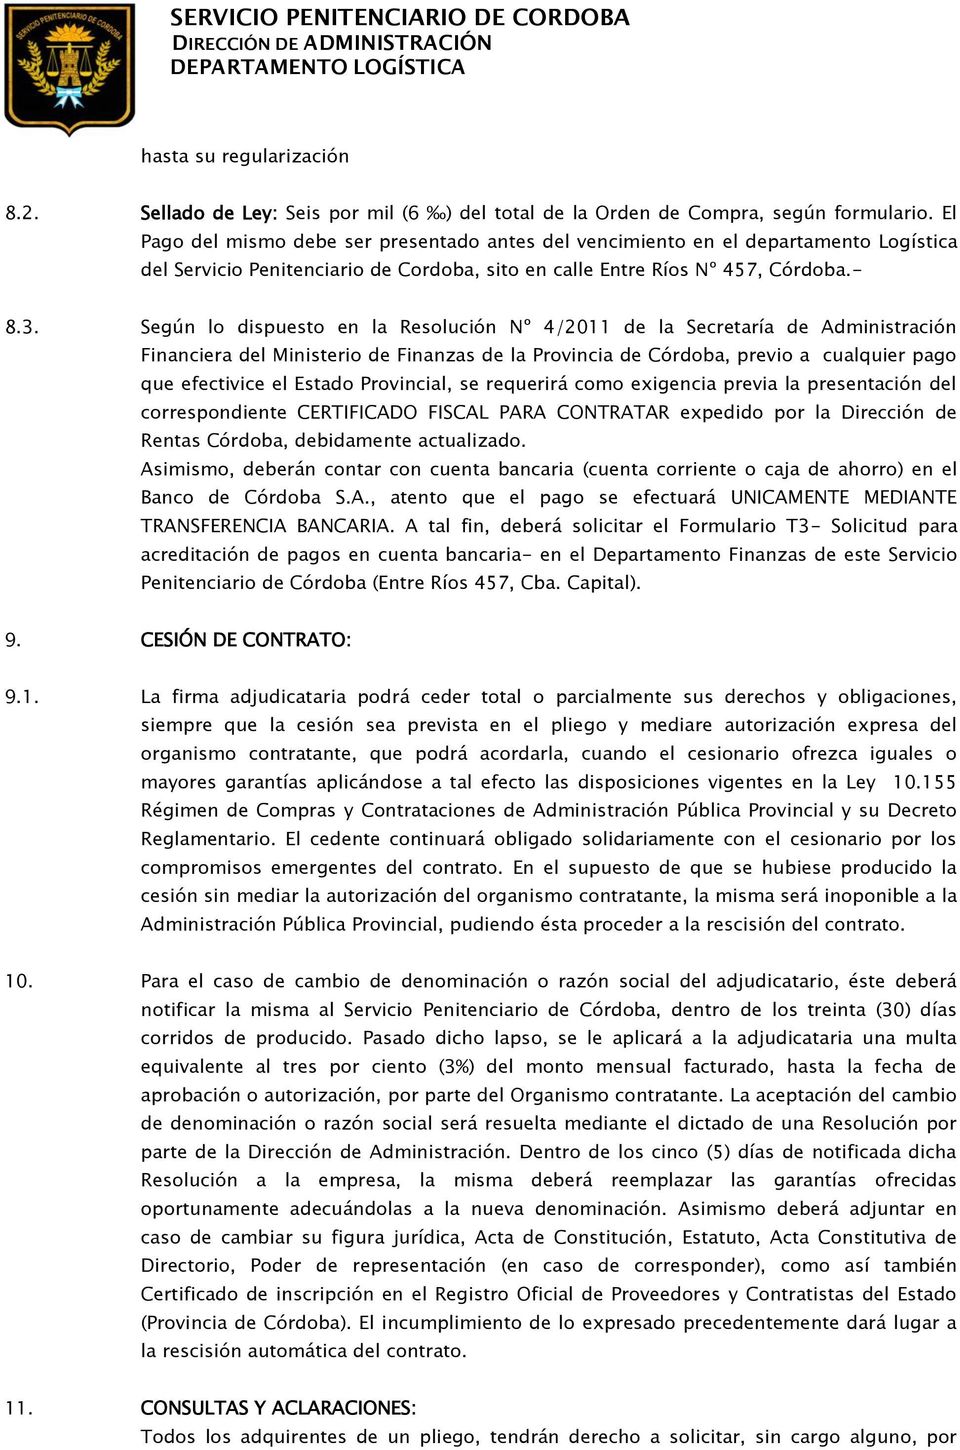 Según lo dispuesto en la Resolución Nº 4/2011 de la Secretaría de Administración Financiera del Ministerio de Finanzas de la Provincia de Córdoba, previo a cualquier pago que efectivice el Estado